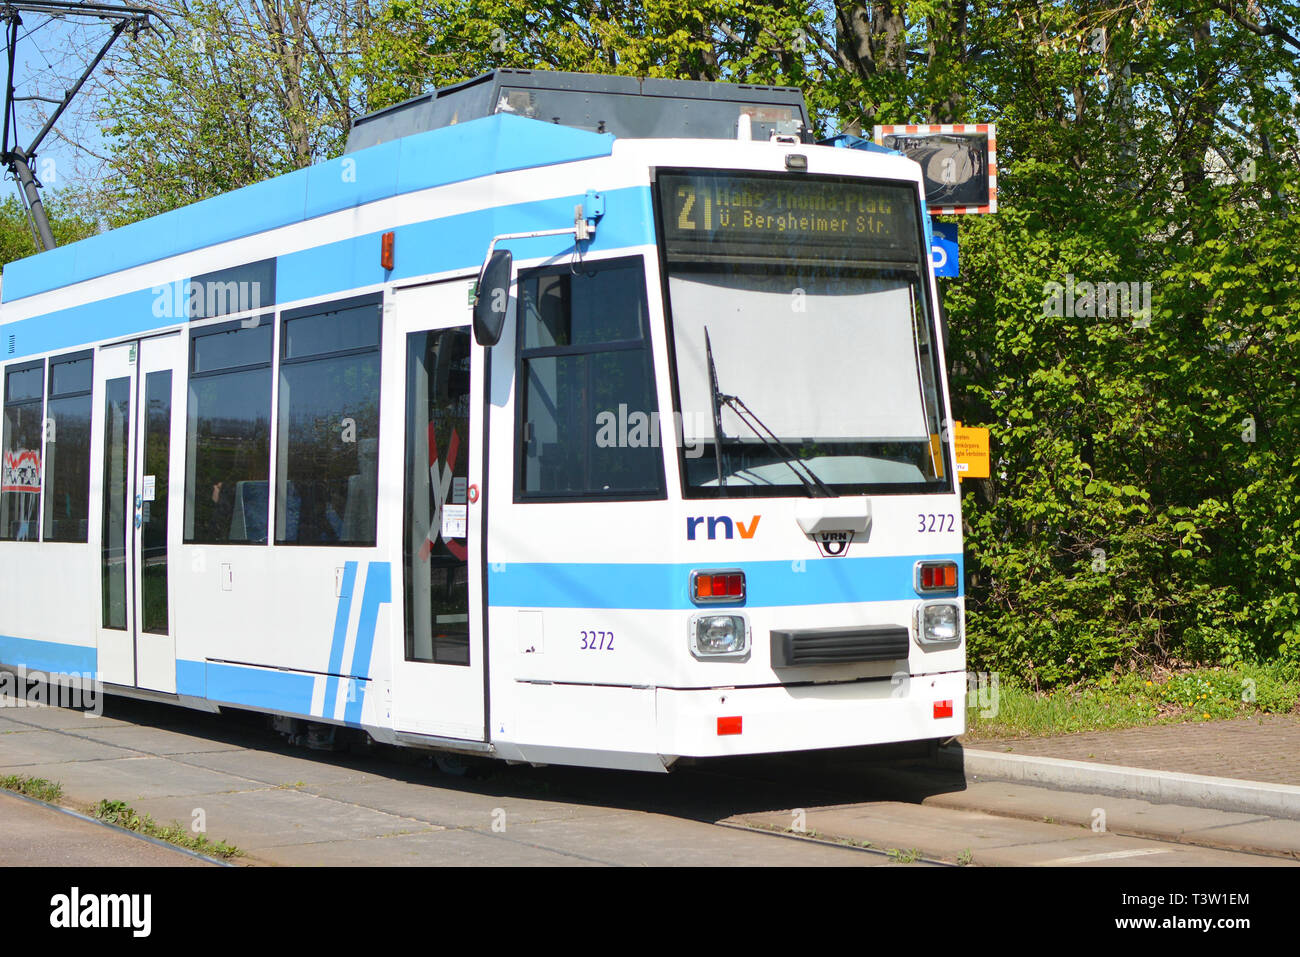 Straßenbahn Linie Nr. 21 Aus dem Deutschen Transport firma namens 'rnv' Stockfoto